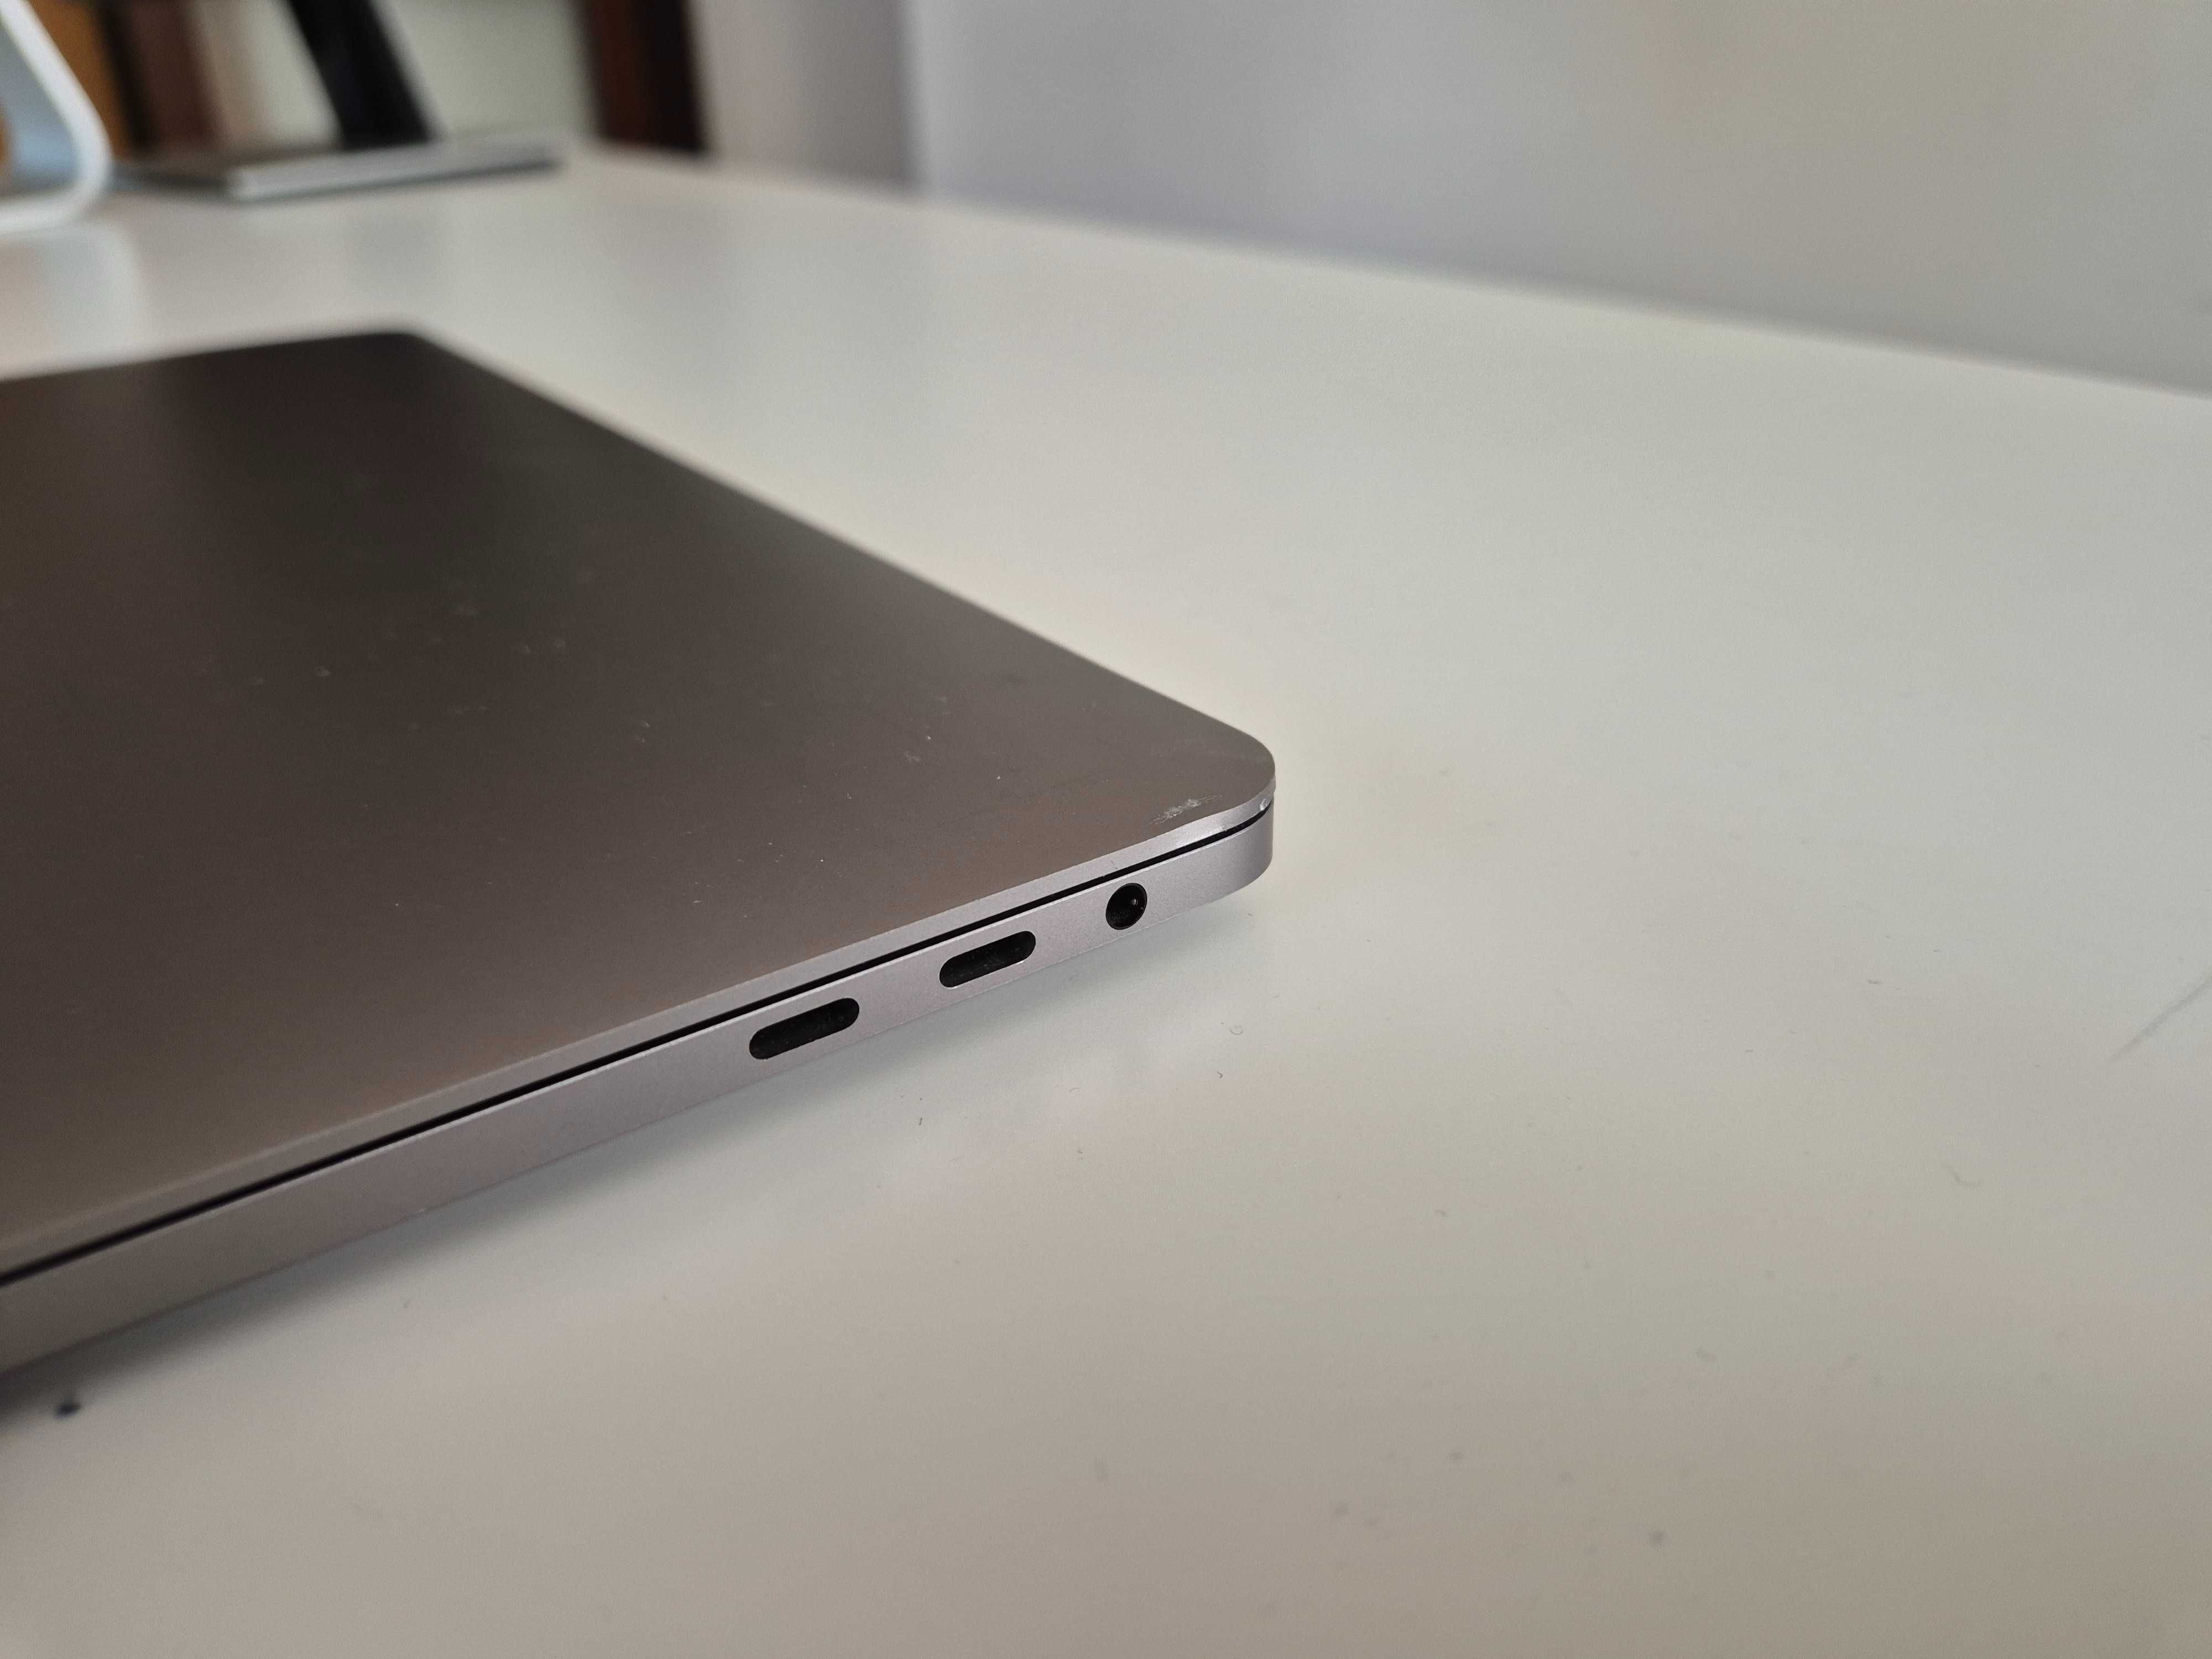 MacBook Pro (13" 2019, 4 TBT3) i7 16GB 512GB SSD, cu Factura si TVA